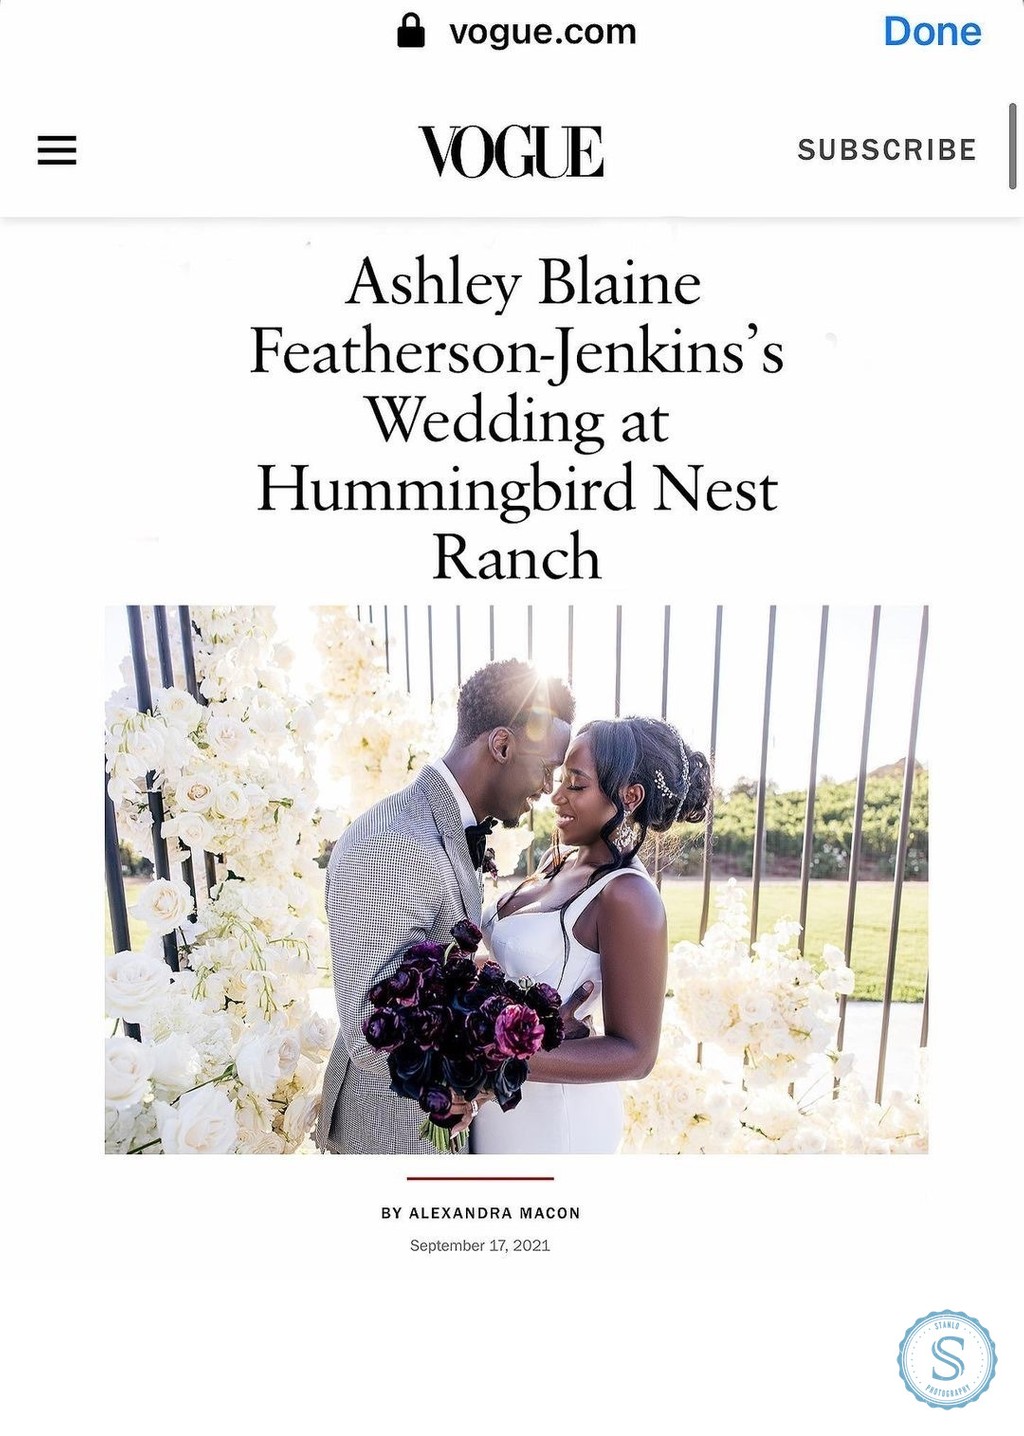 Ashley Blaine Vogue Wedding